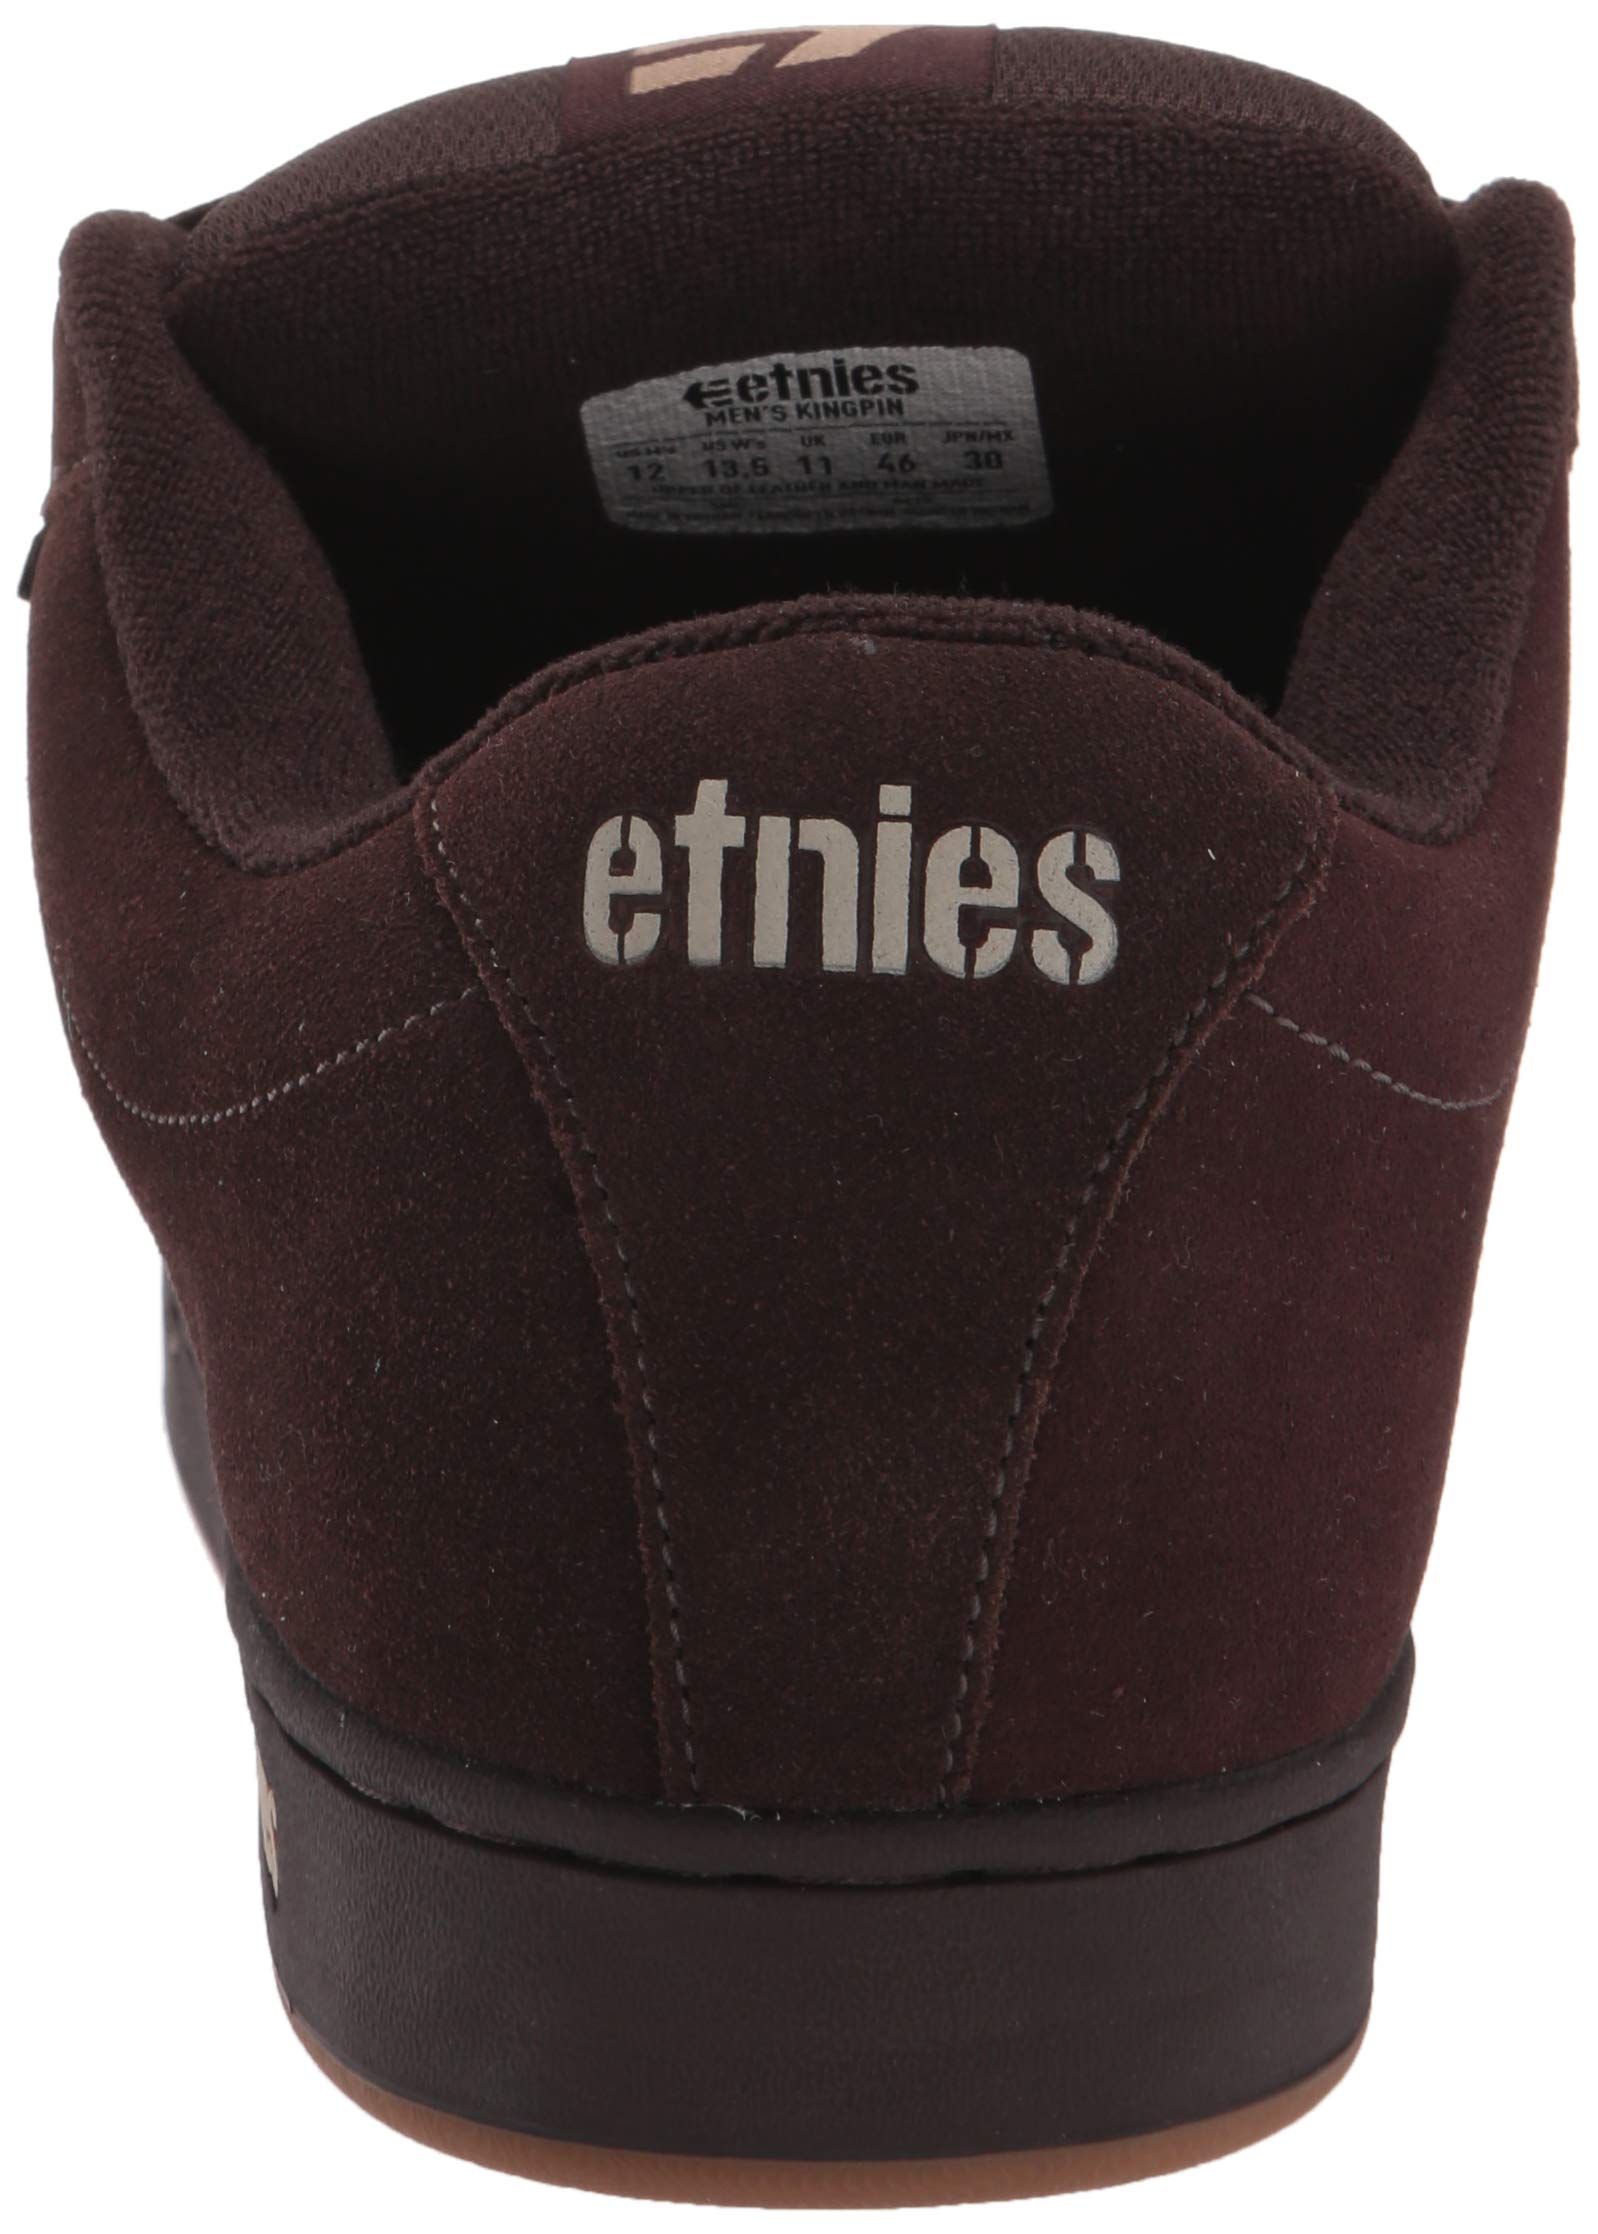 Etnies Mens Kingpin Skate Skate Sneakers Shoes Casual - Black